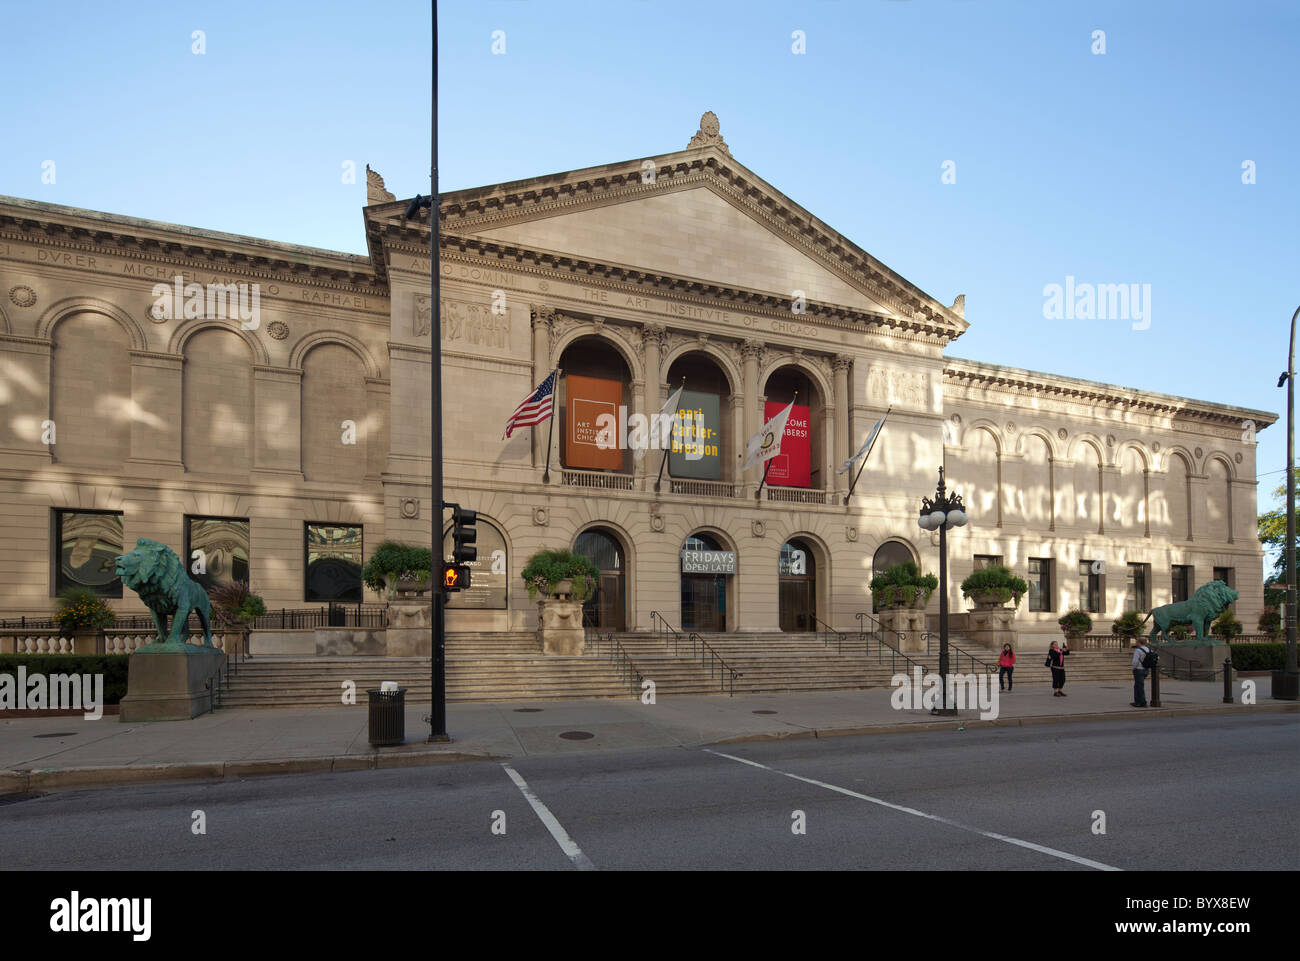 El Instituto de Arte de Chicago, Illinois, EE.UU. Foto de stock